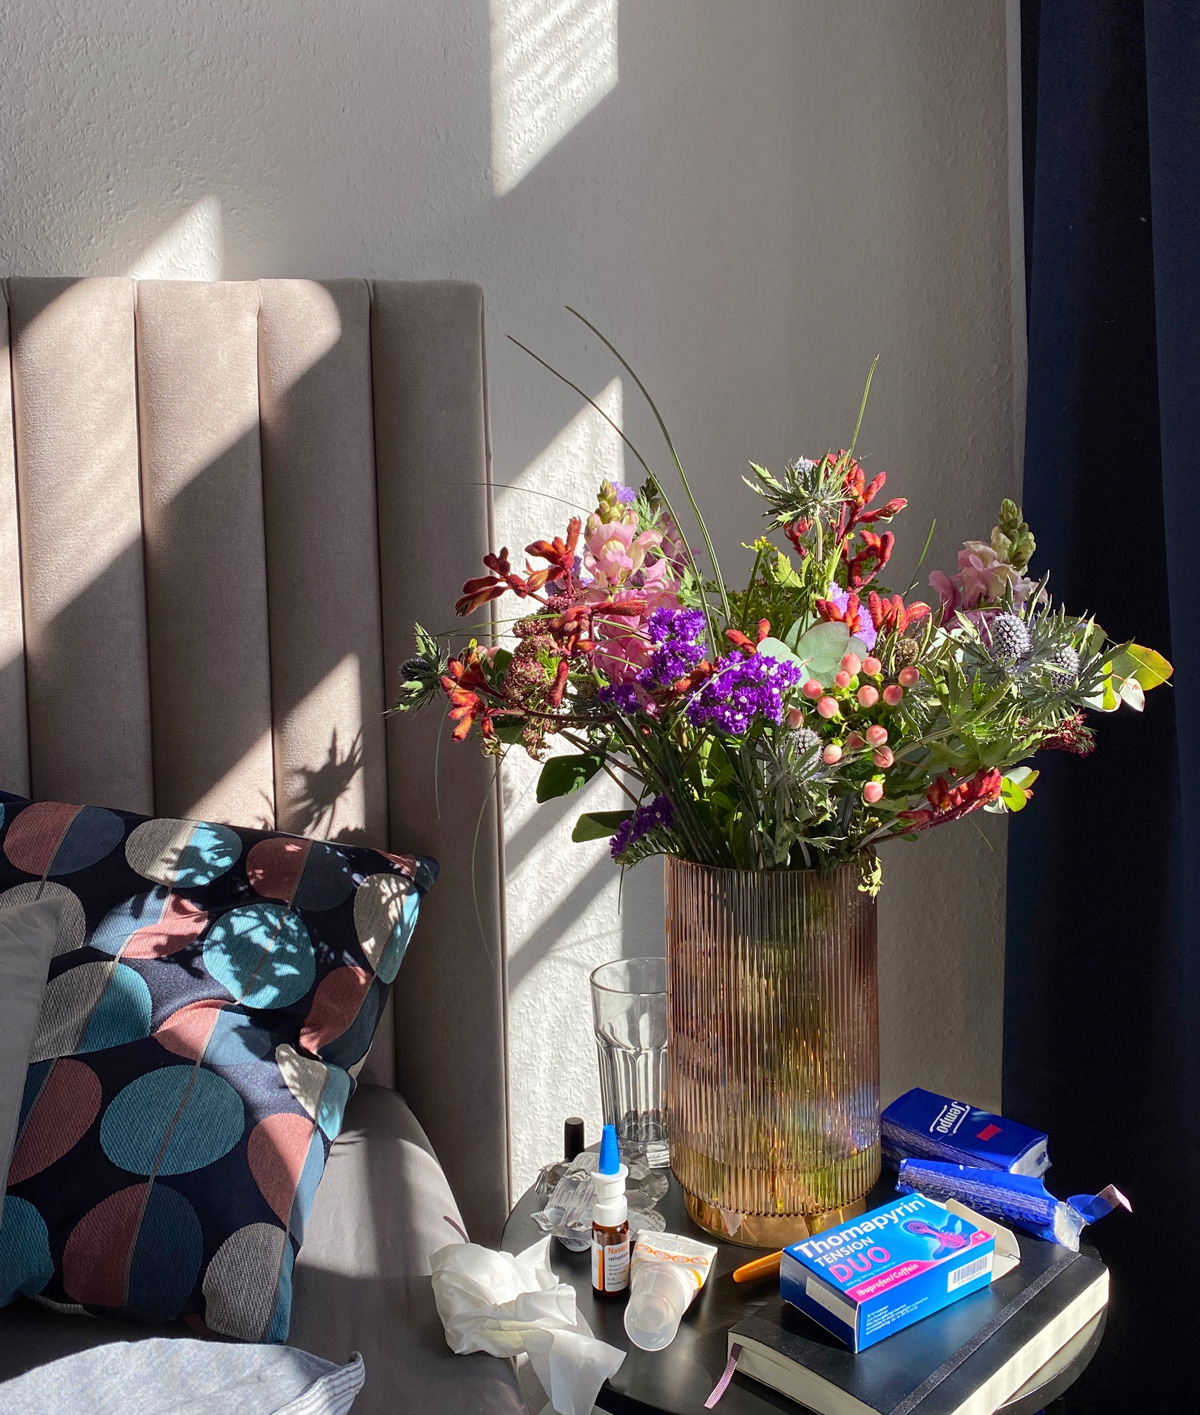 Foto von einem großen Blumenstrauß auf dem Nachtisch eines Bettes. Daneben liegen Taschentücher und Schmerztabletten